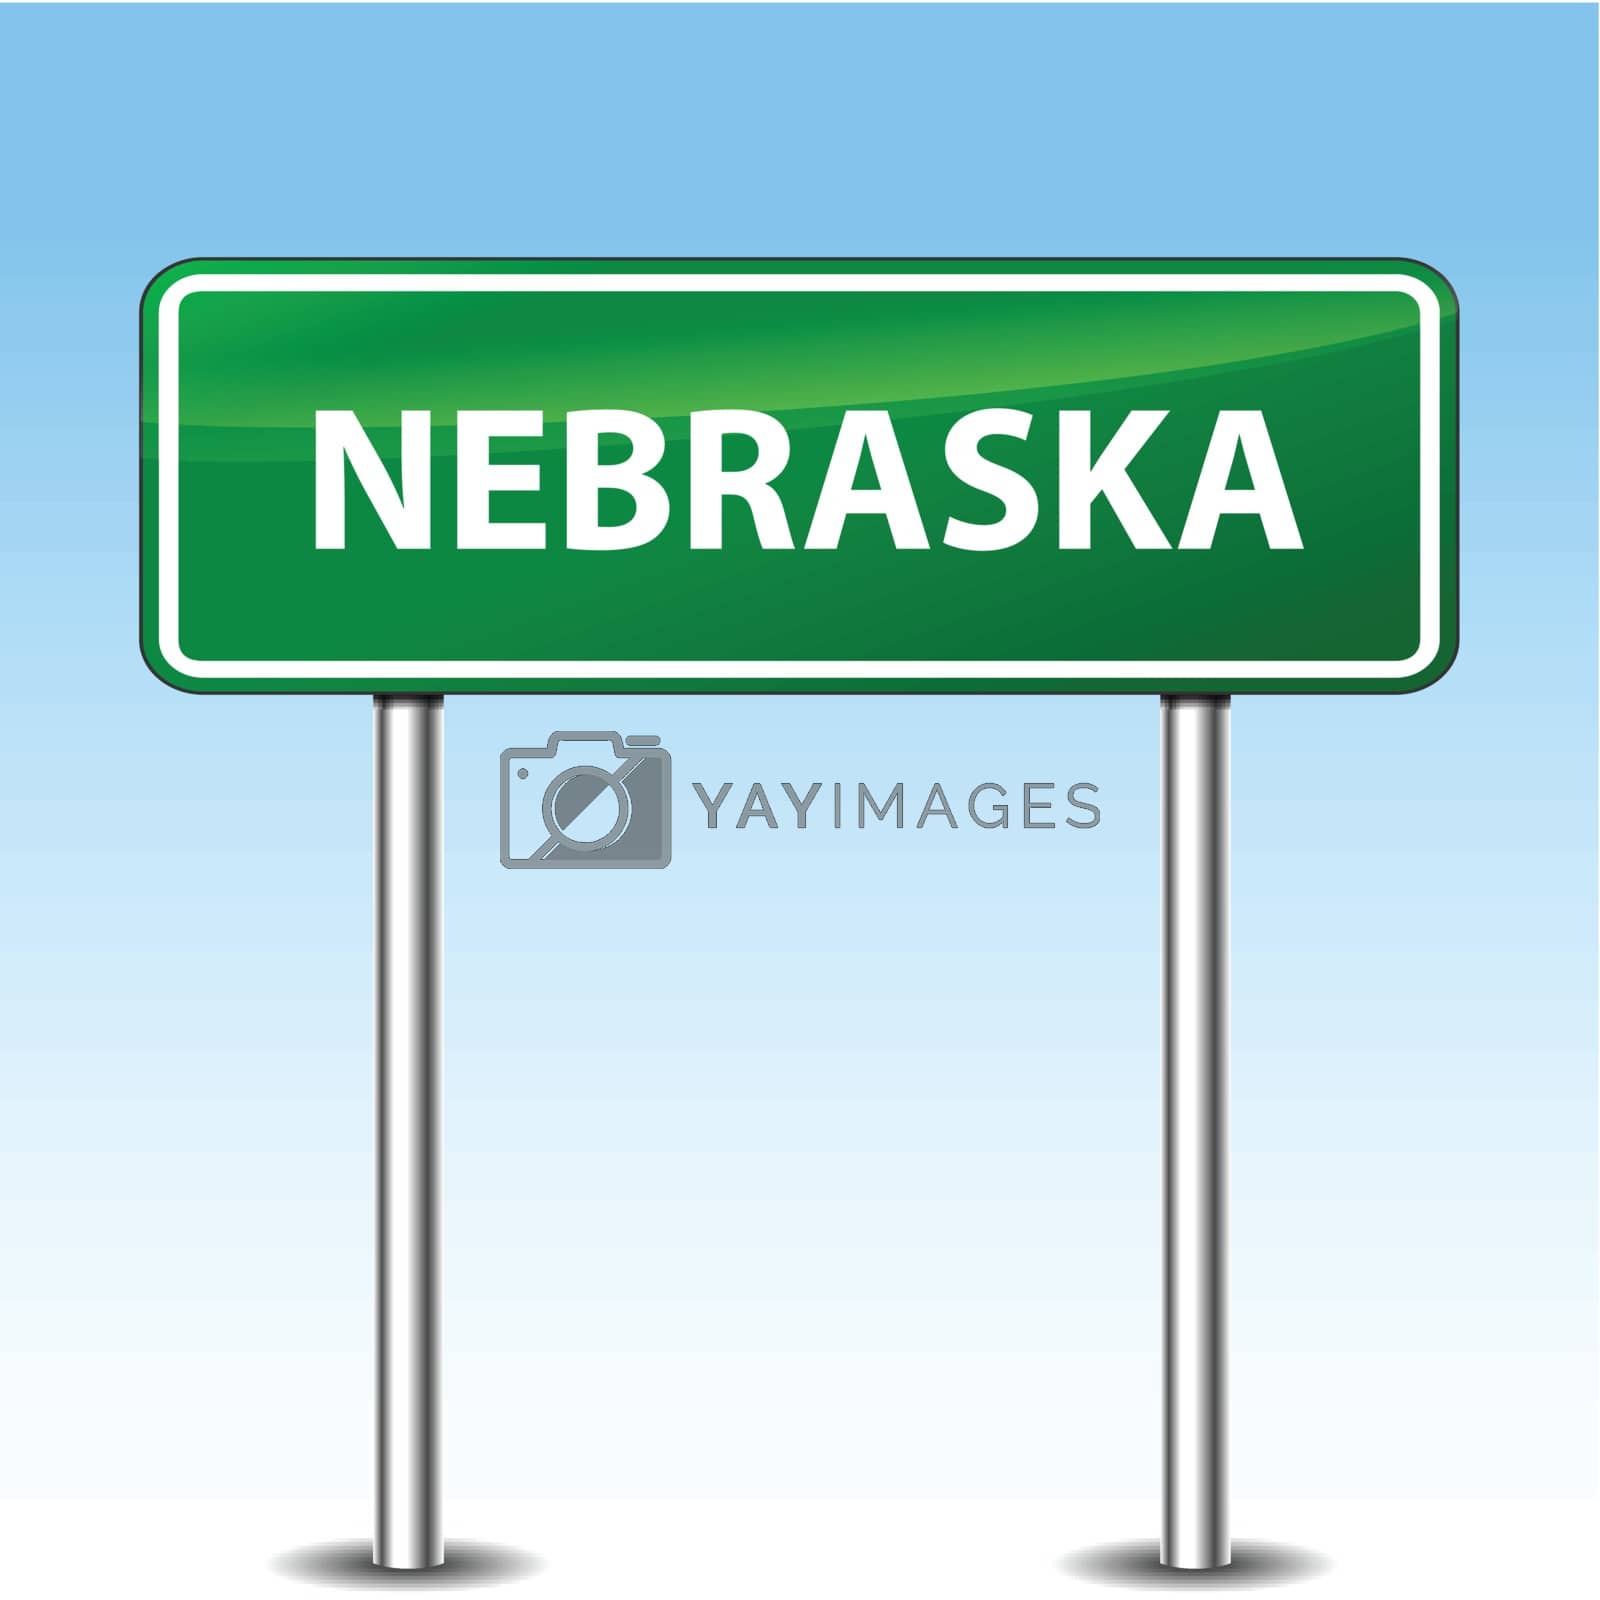 Royalty free image of nebraska green sign by nickylarson974